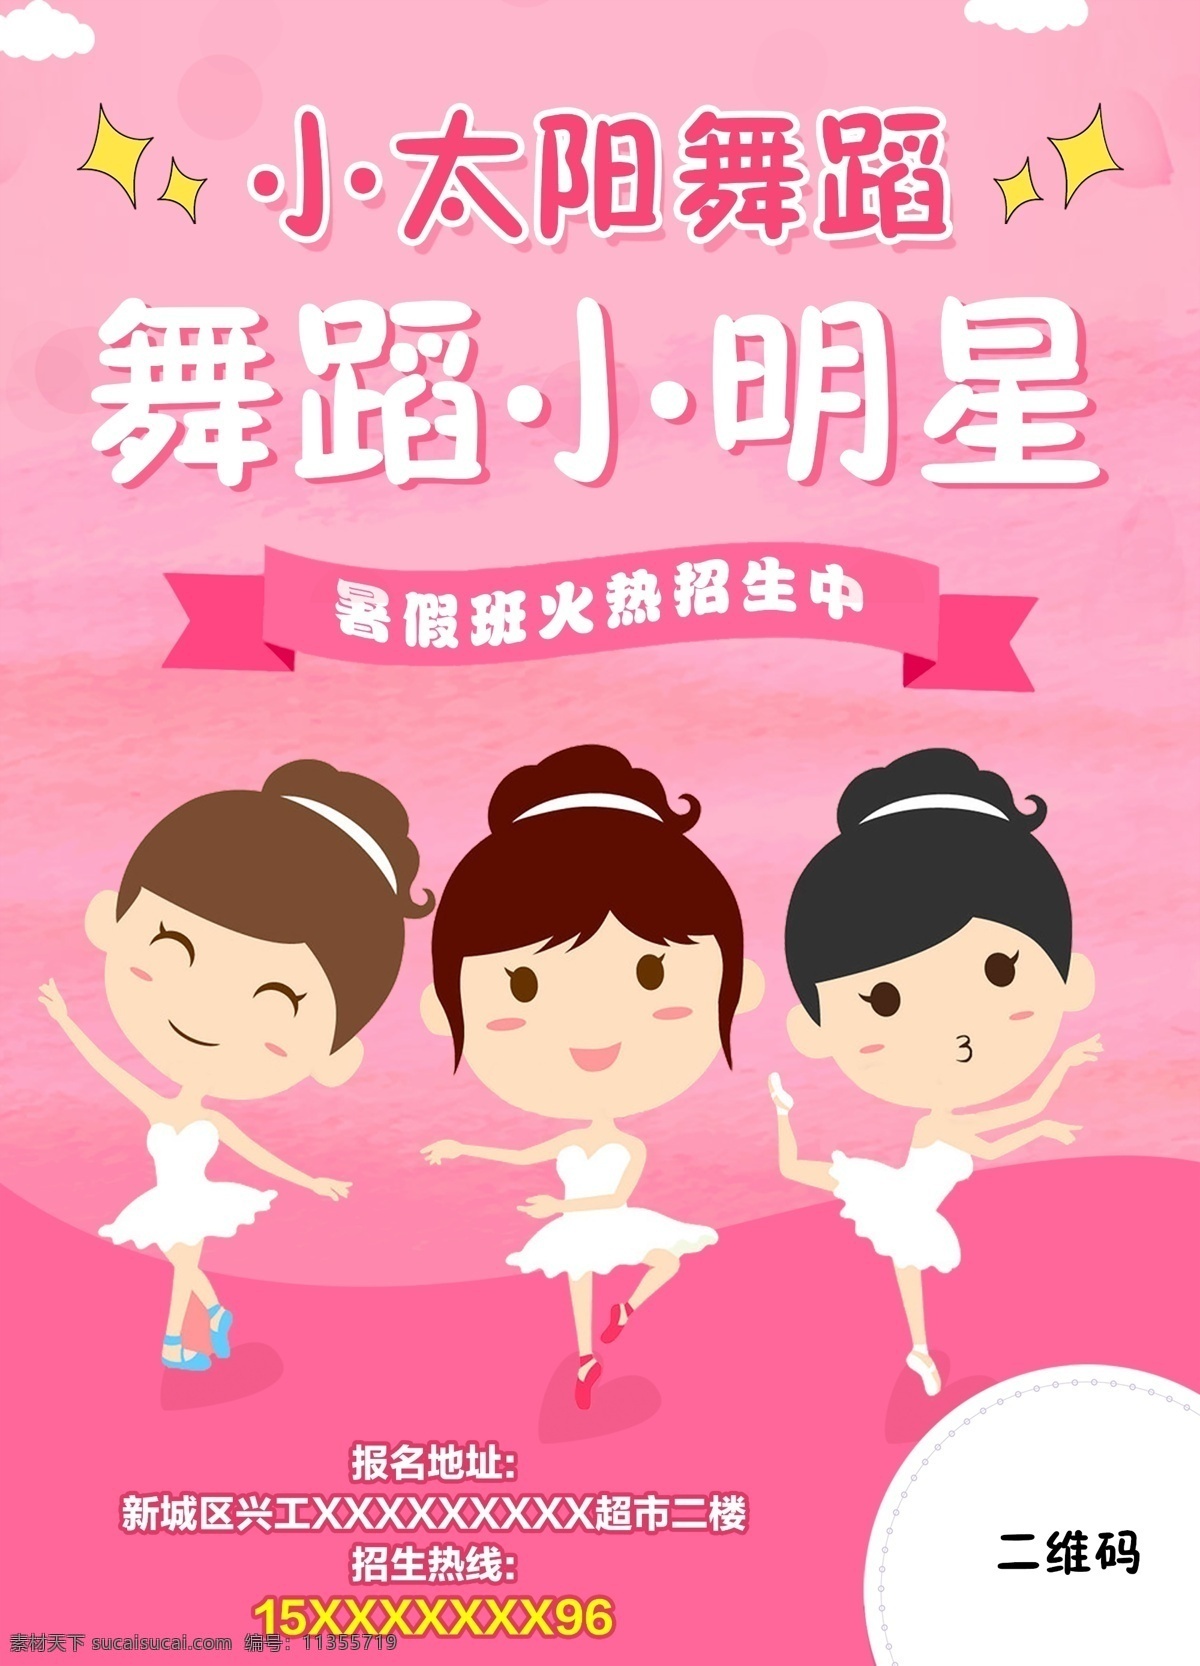 舞蹈海报 红色 背景 跳舞 卡通人物 招生 机构 芭蕾 中国舞 艺术 招生海报 艺术招生 舞蹈 卡通素材 跳舞的小人